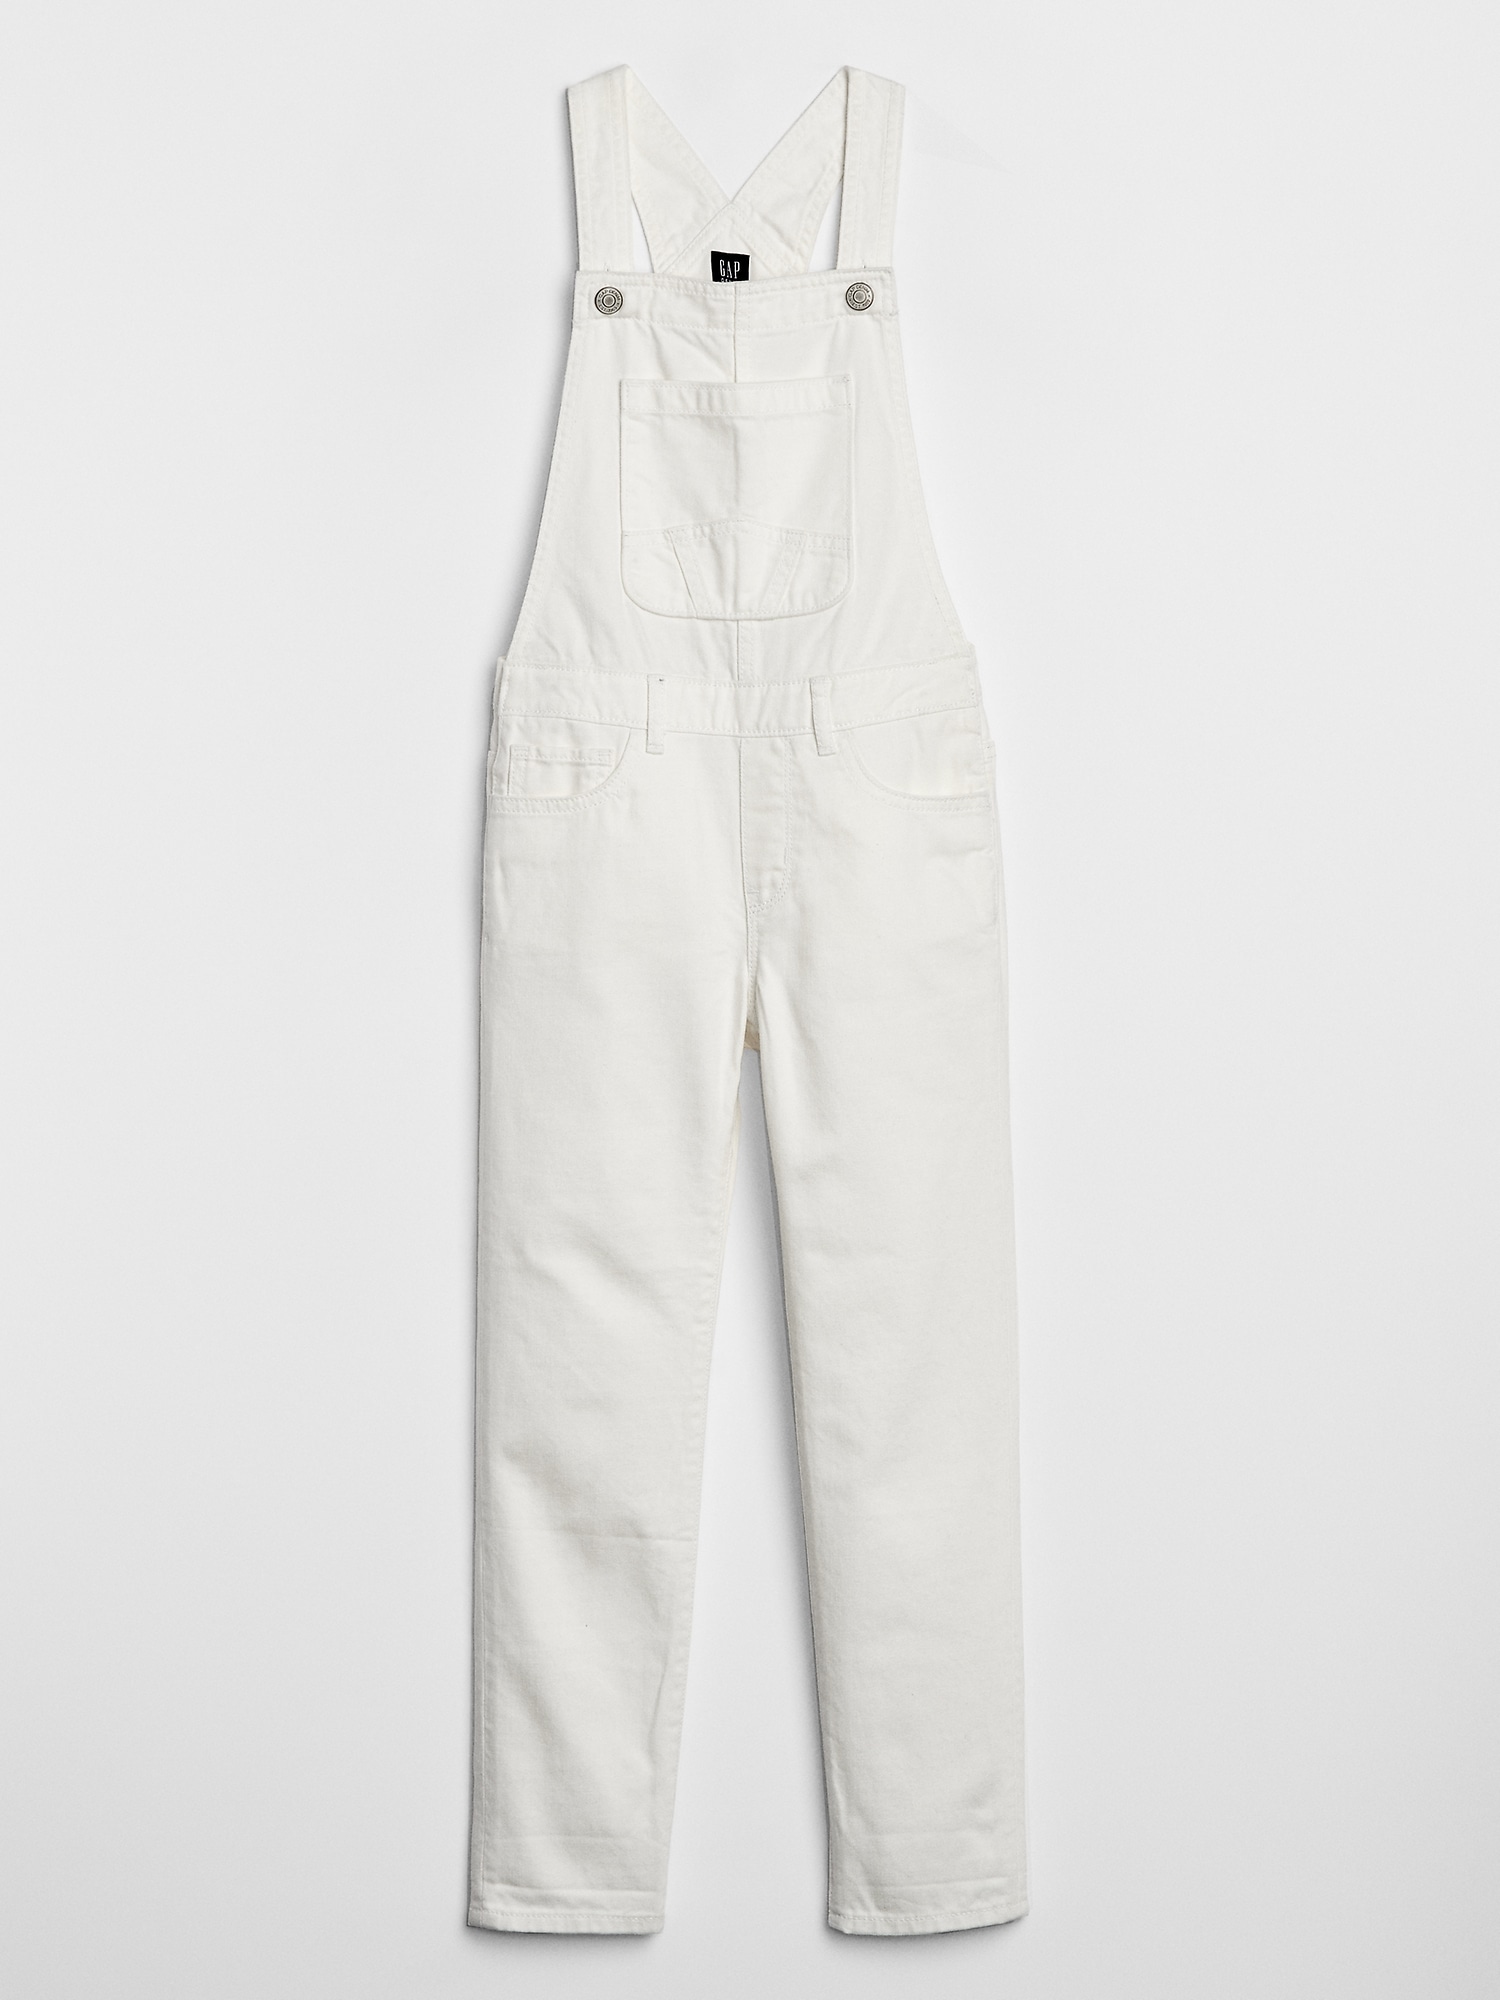 gap white overalls